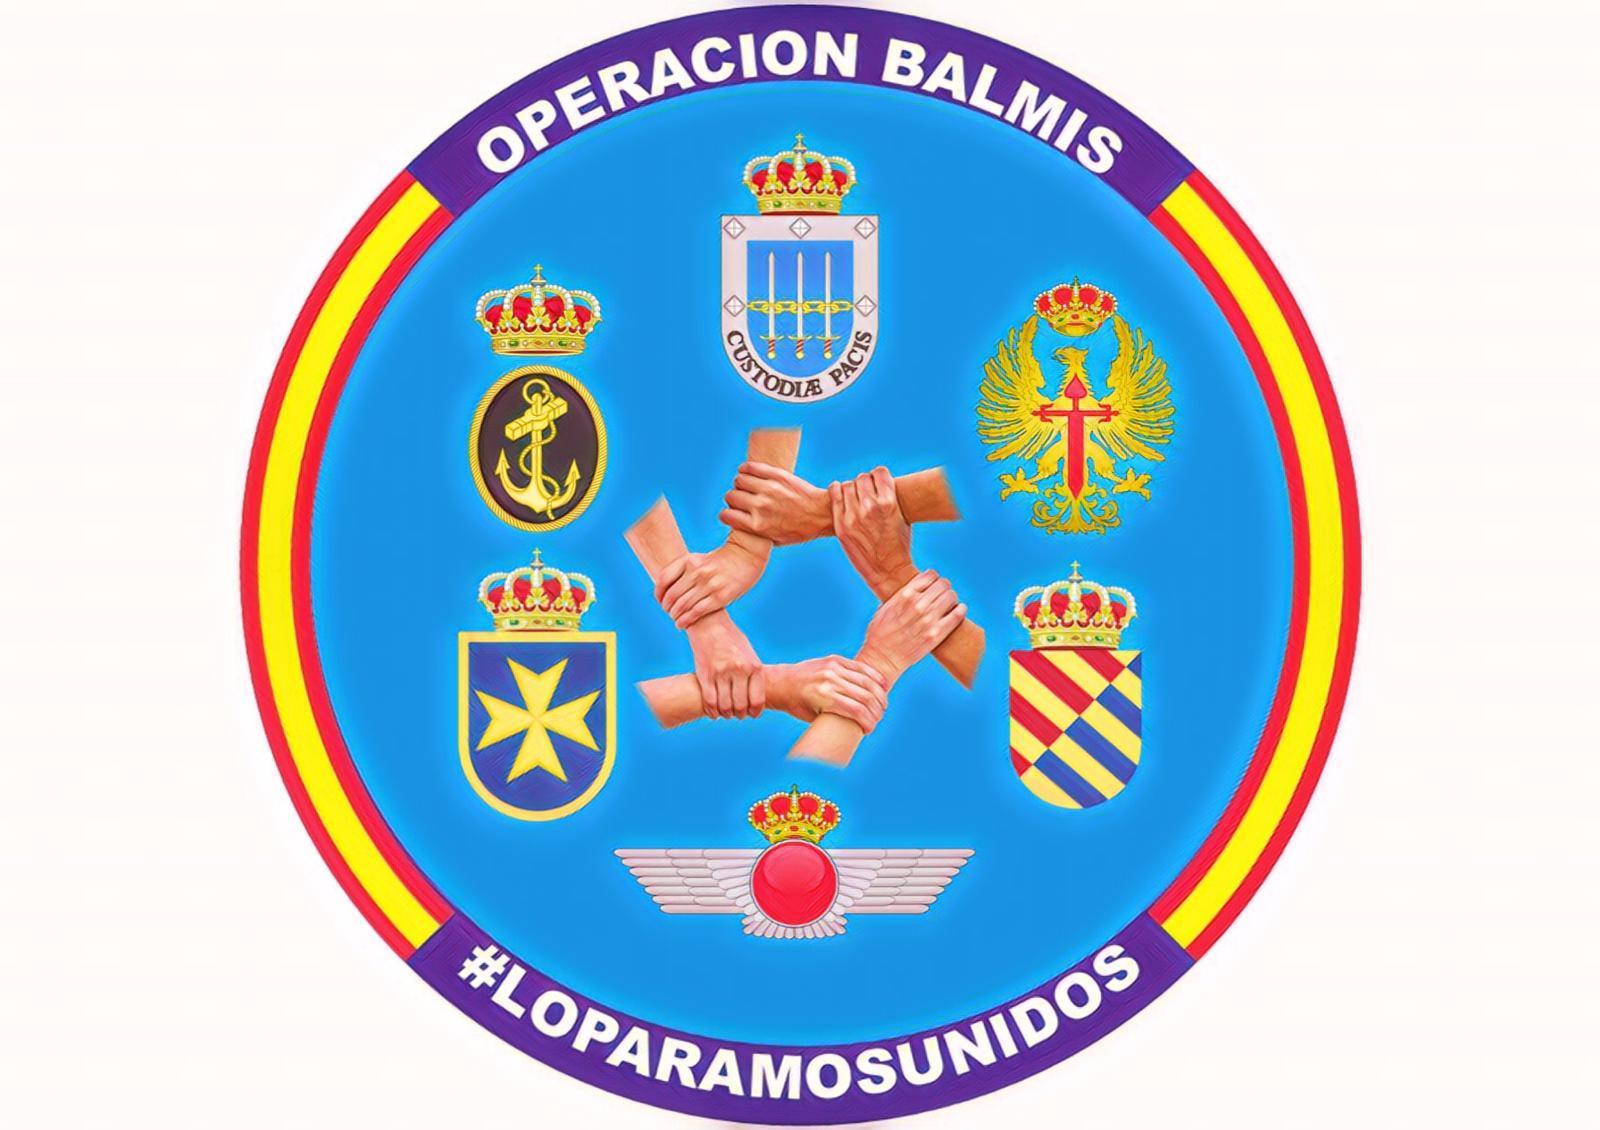 Parche Operacion Balmis ECF Patch 1136 